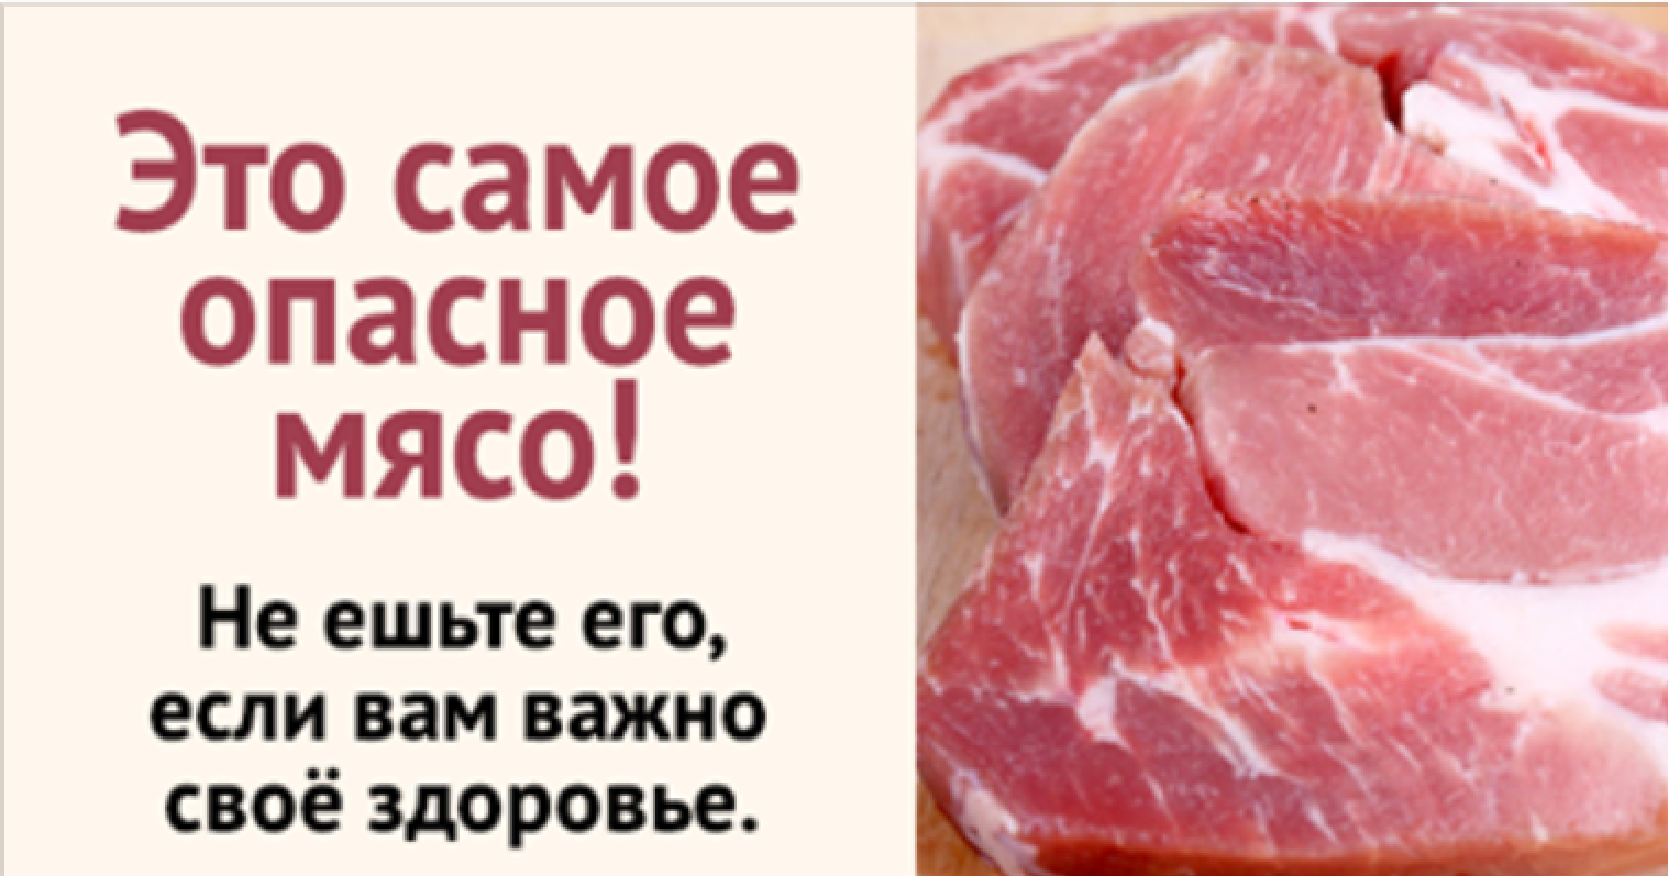 Полезность мяса. Свинина опасна для здоровья.